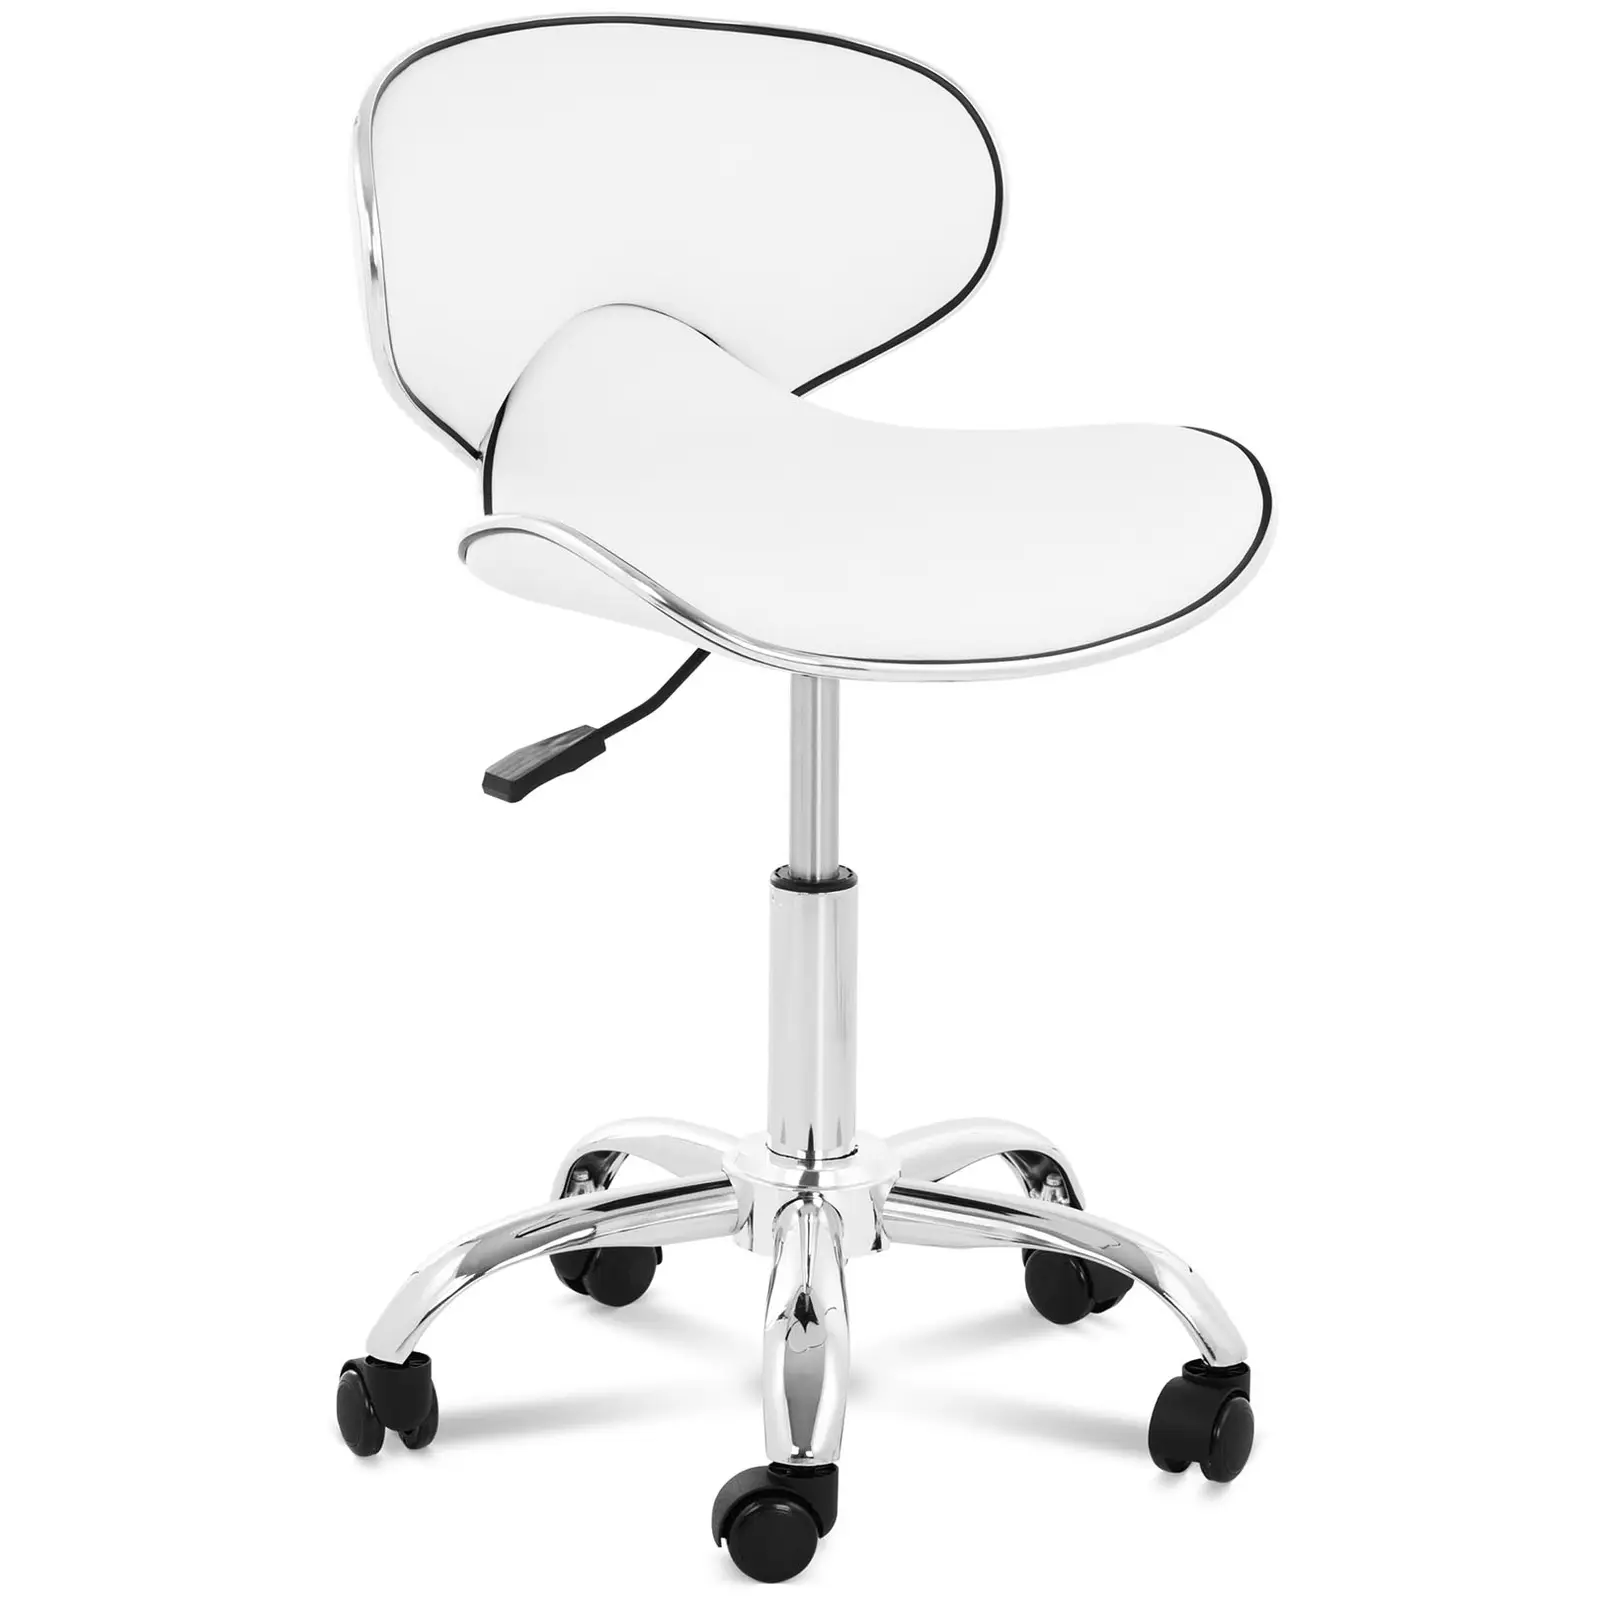 Καρέκλα-σκαμπό με πλάτη - Ύψος καθίσματος 48 - 62Cm / Ύψος 68 - 82Cm mm - 150 kg - White